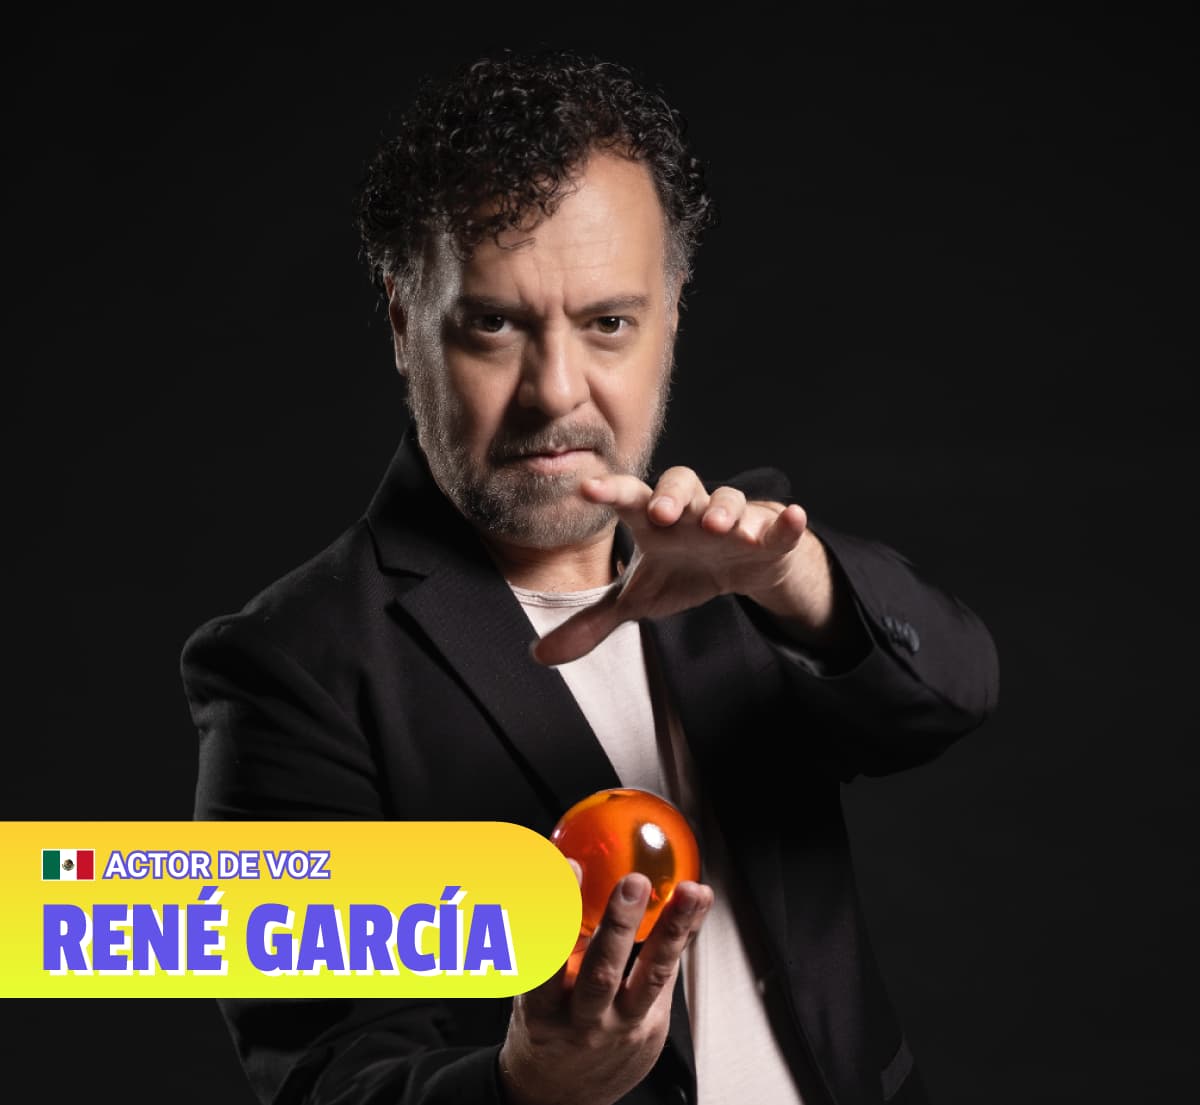 René García - Actor de Voz